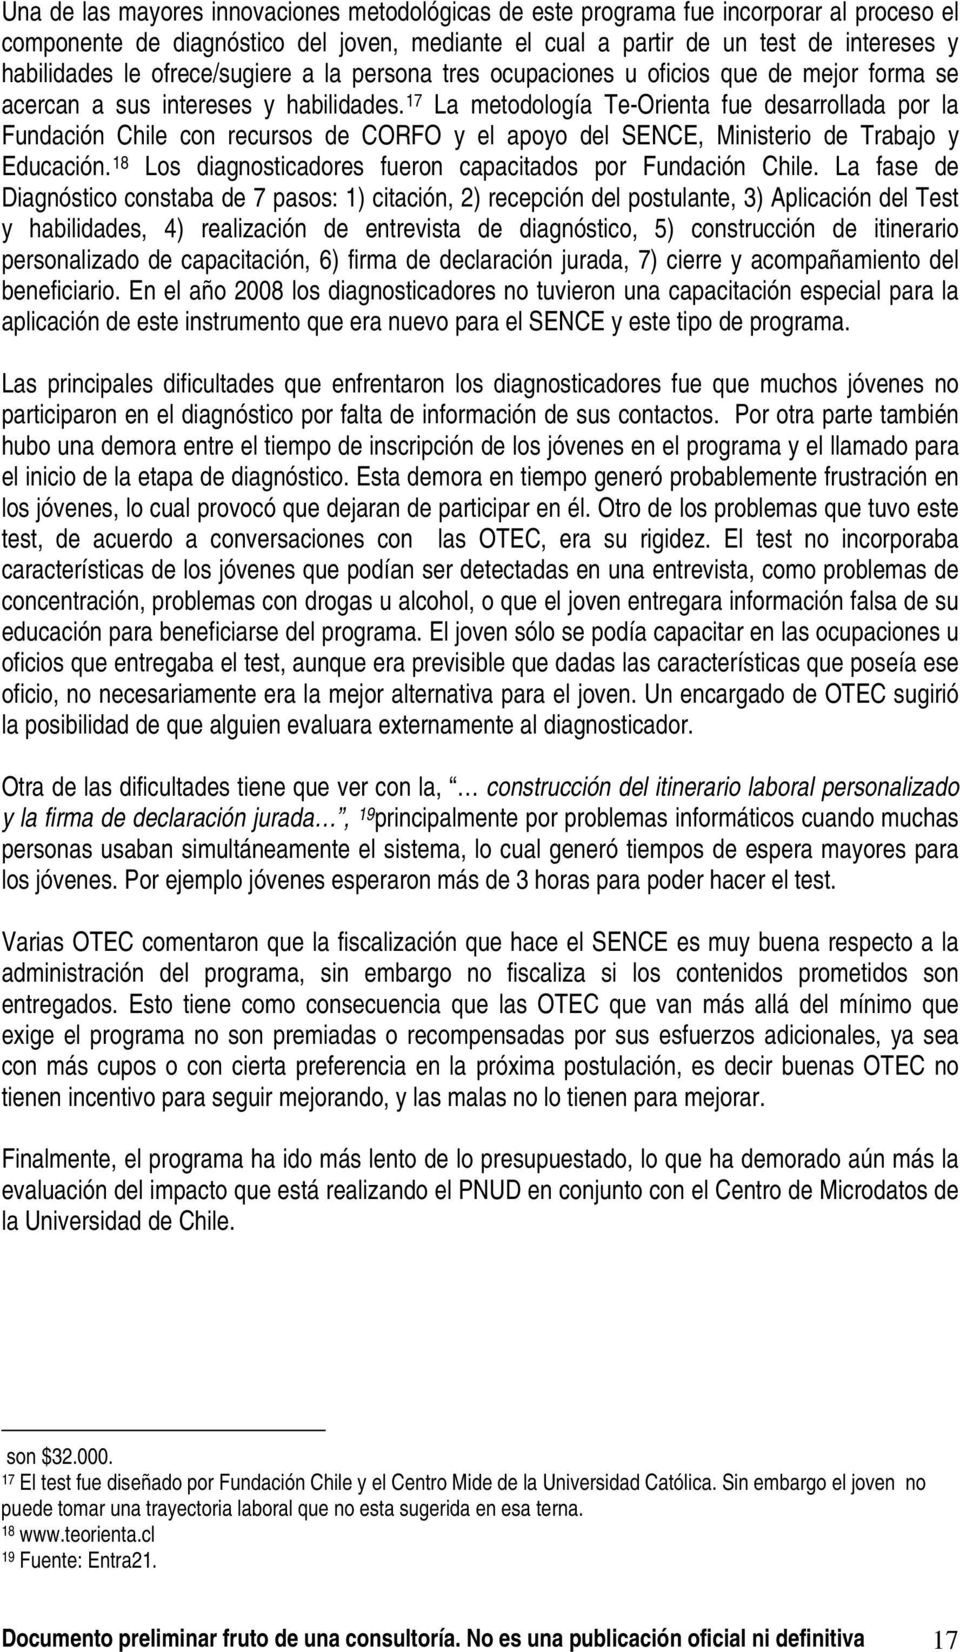 17 La metodología Te-Orienta fue desarrollada por la Fundación Chile con recursos de CORFO y el apoyo del SENCE, Ministerio de Trabajo y Educación.